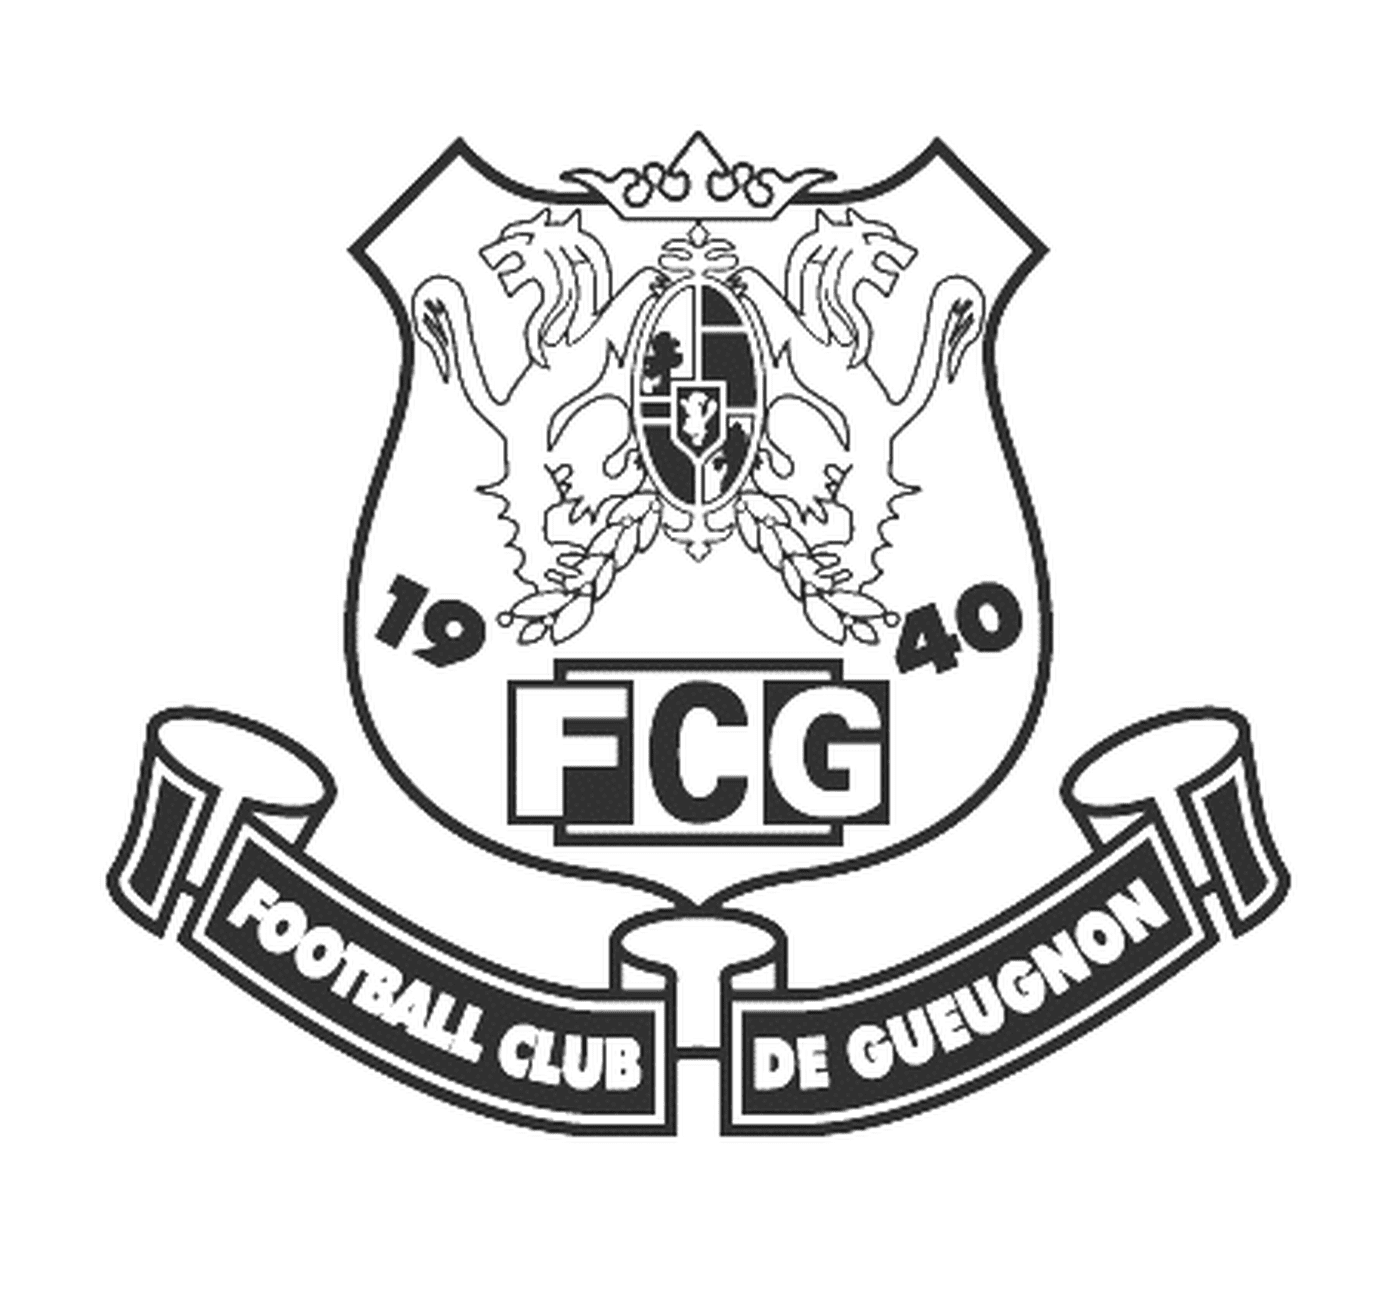  Gueugnon足球俱乐部标志 